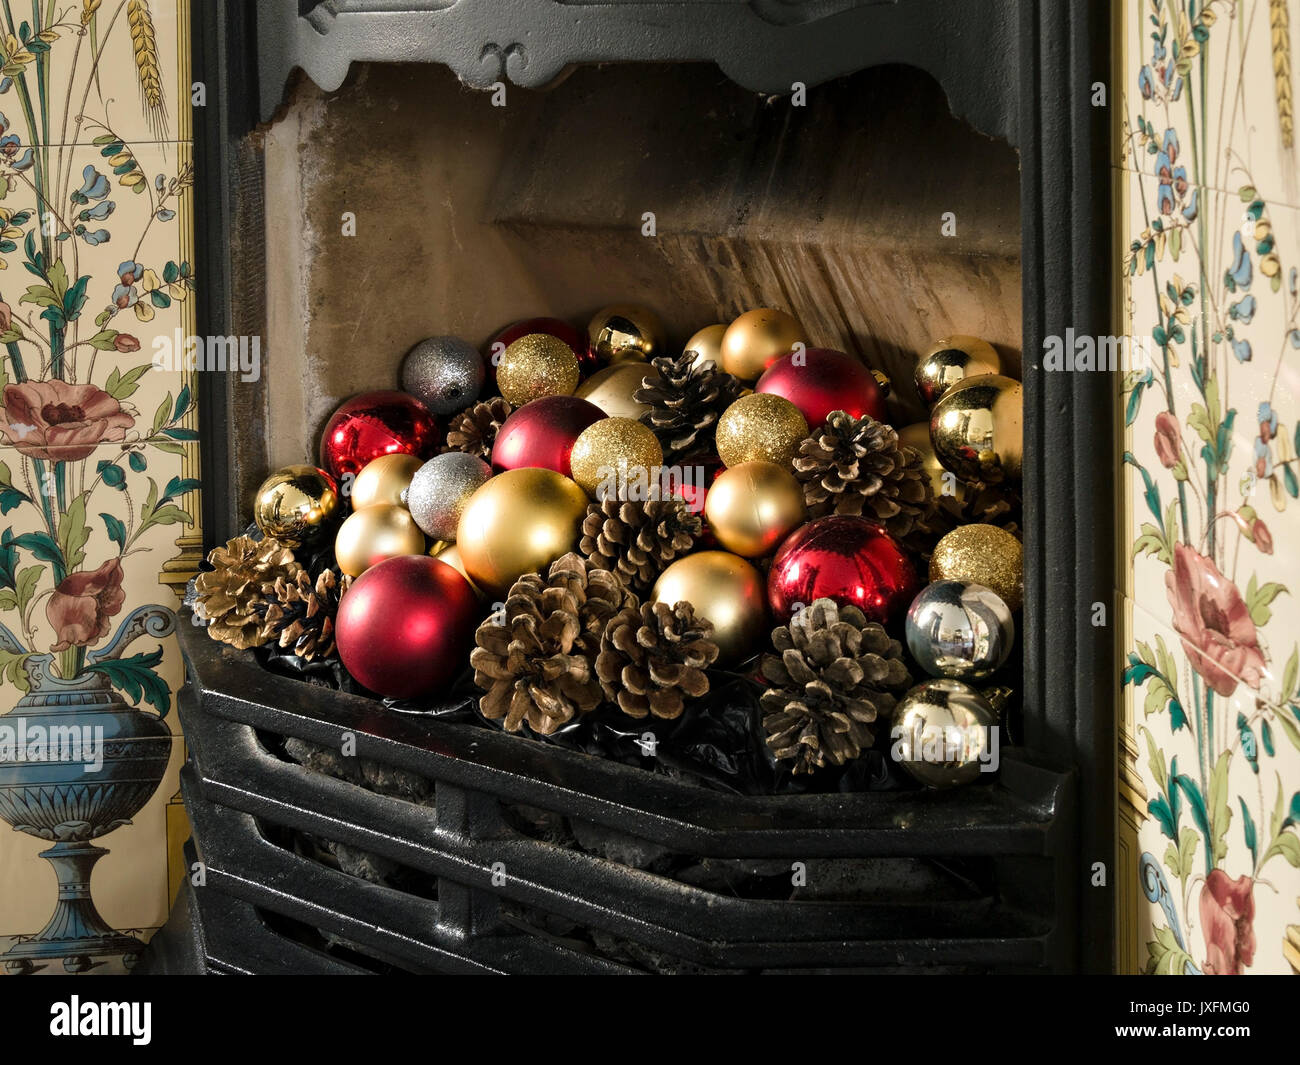 Hübscher, gusseiserner Kamin im viktorianischen Stil mit farbenfrohen Weihnachtskugeln und Tannenzapfen, England, Großbritannien Stockfoto